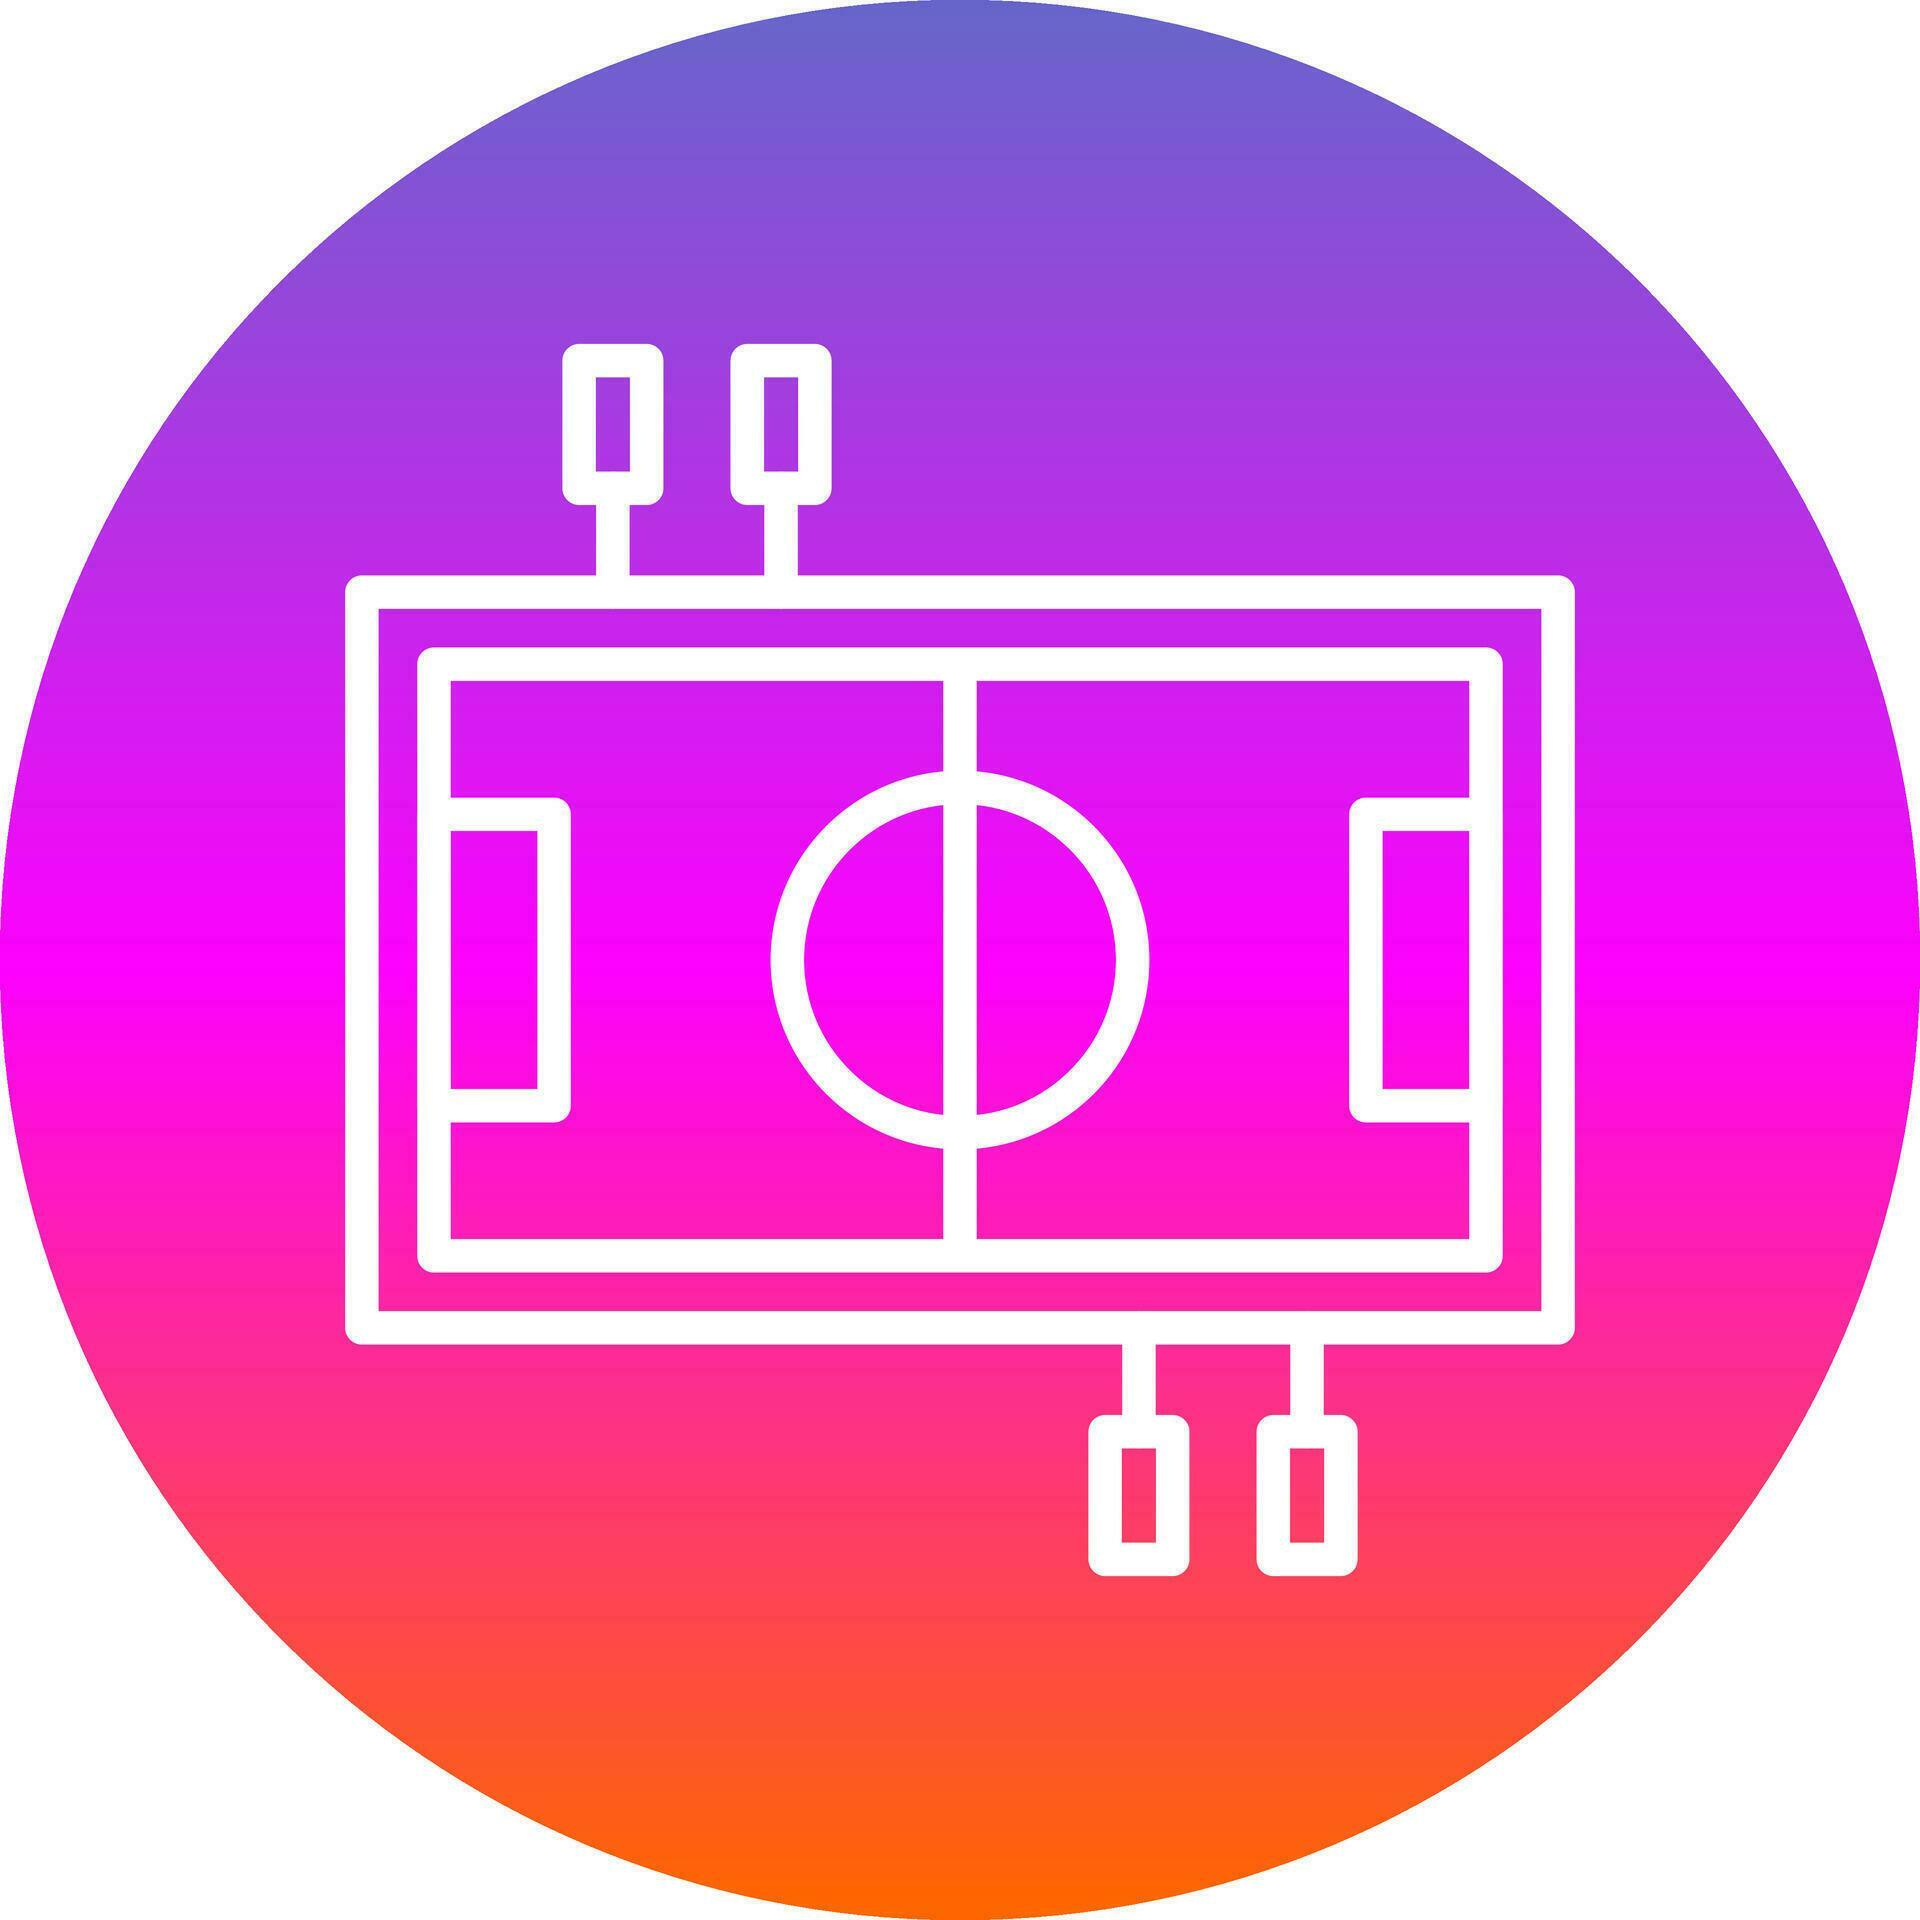 table-football-vector-icon-design-27937432-vector-art-at-vecteezy